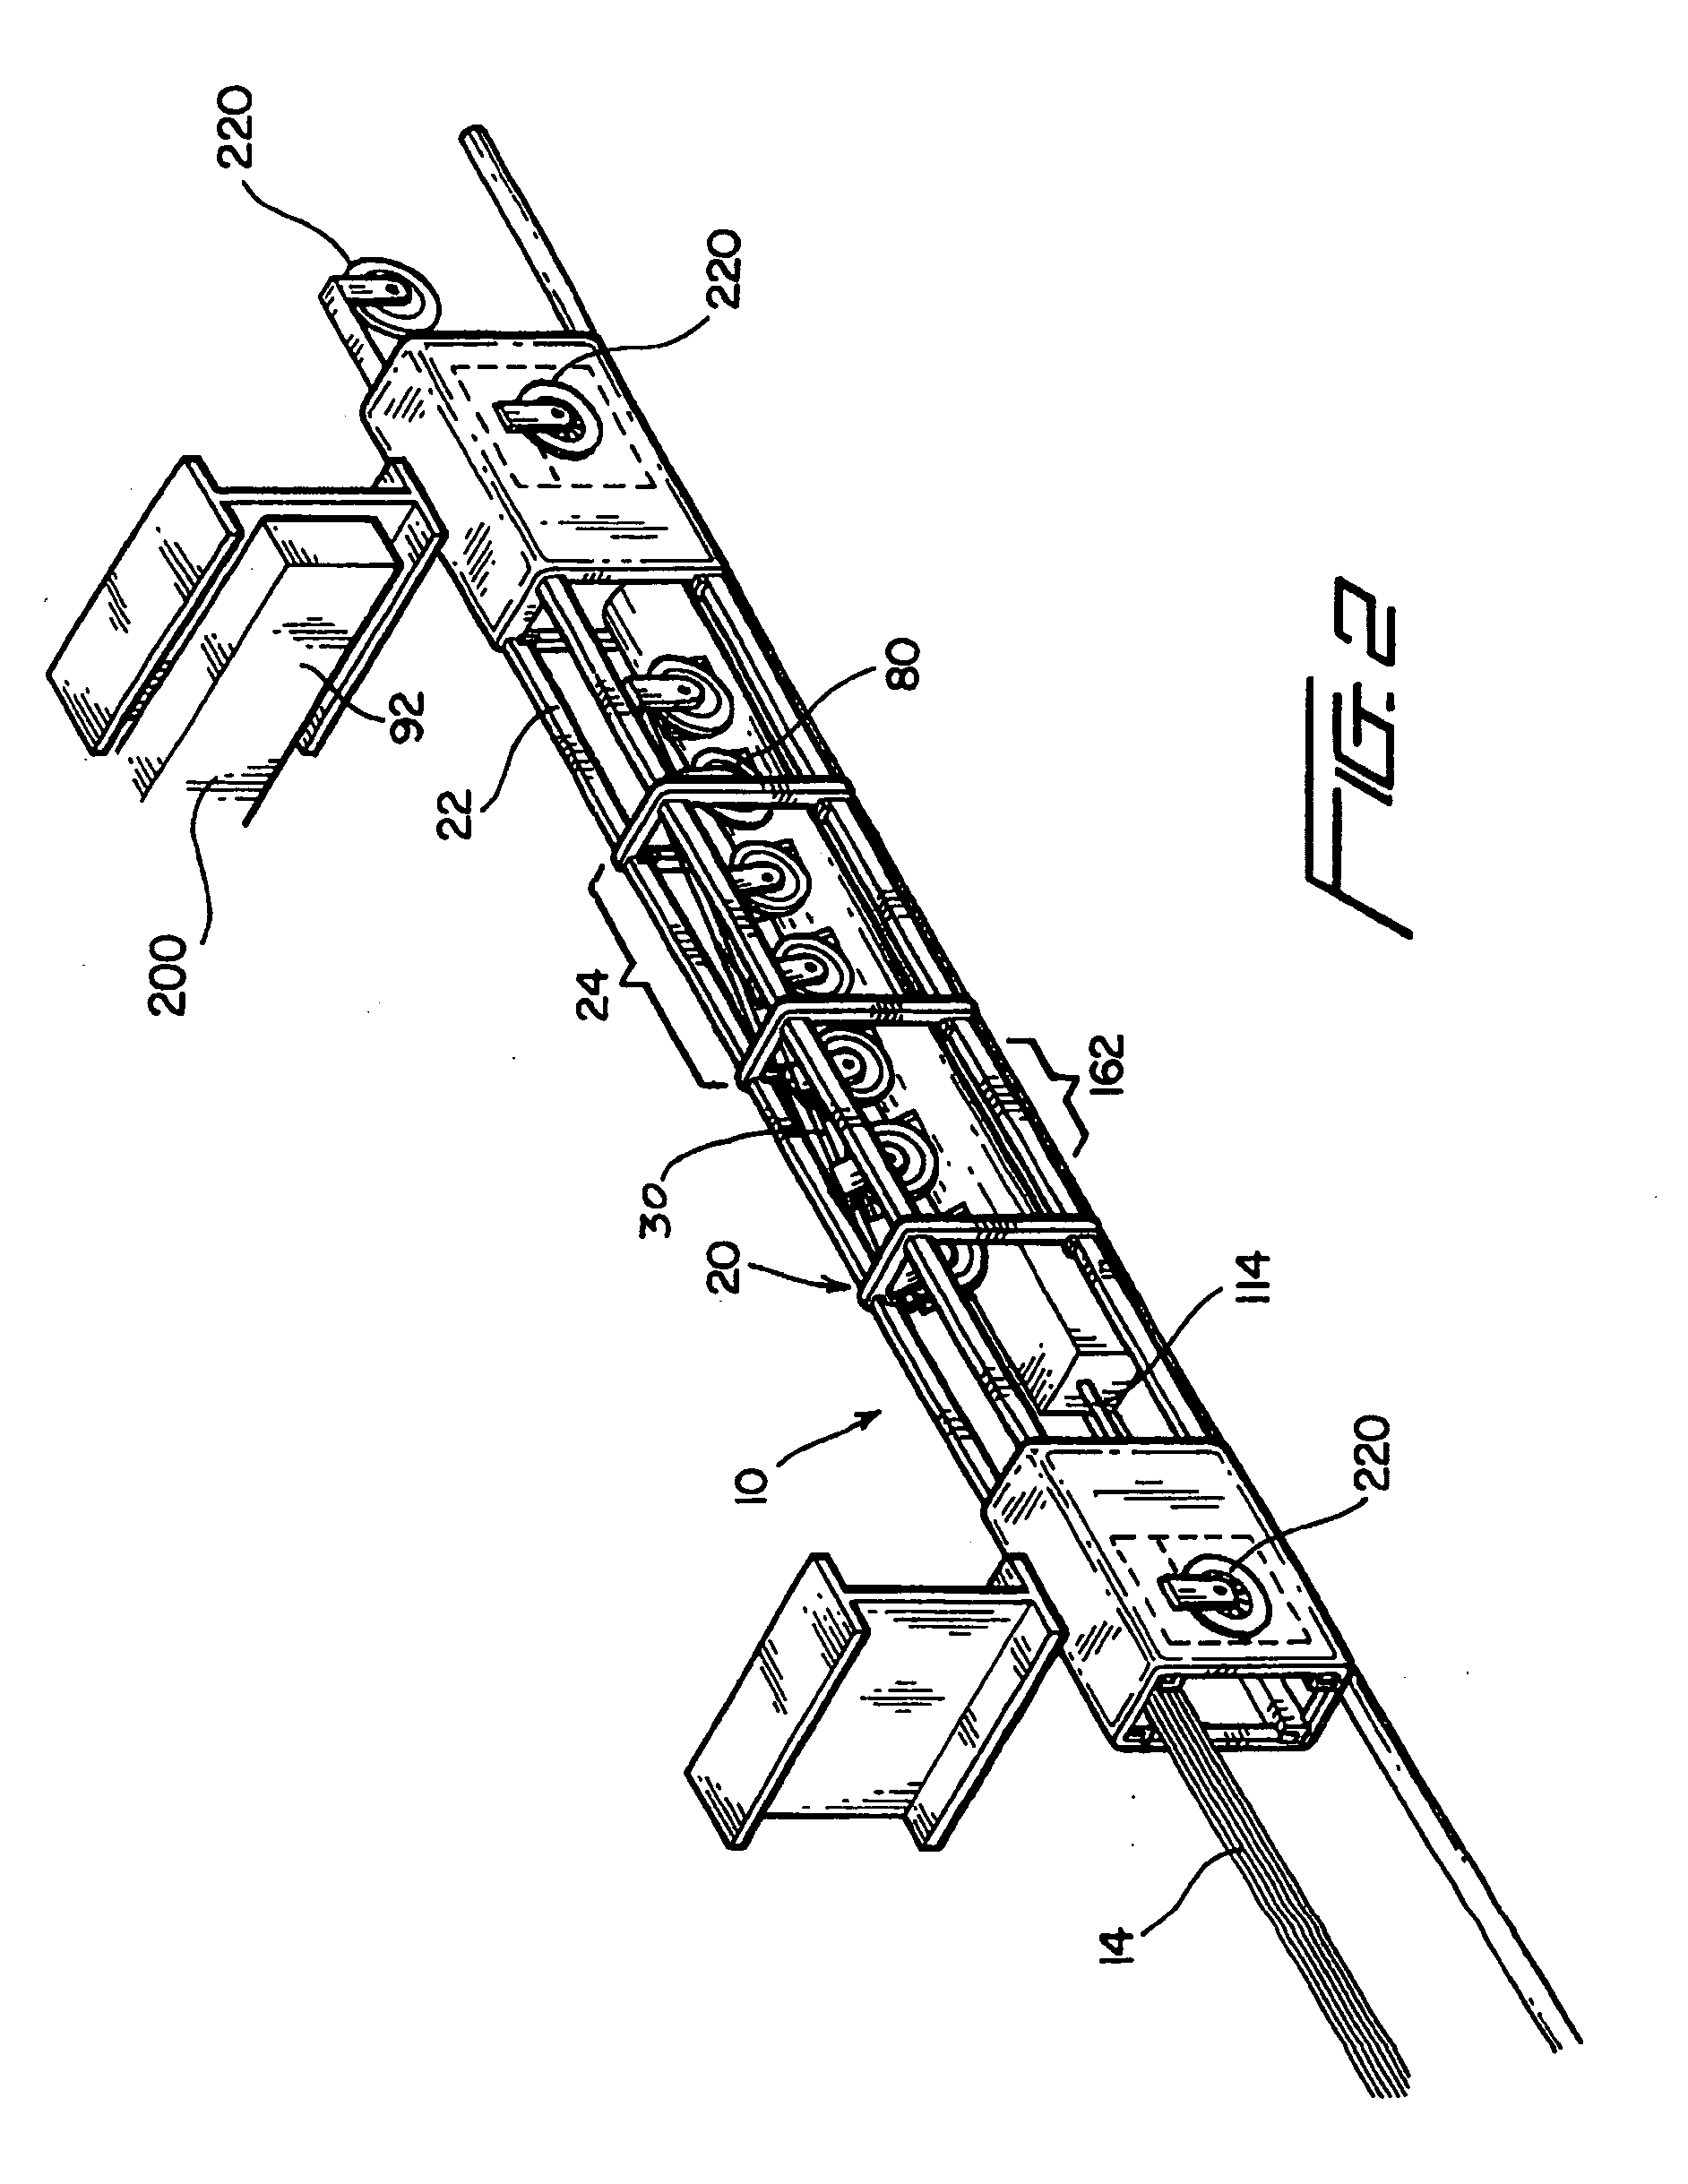 Intermediate brake for modular lift assembly